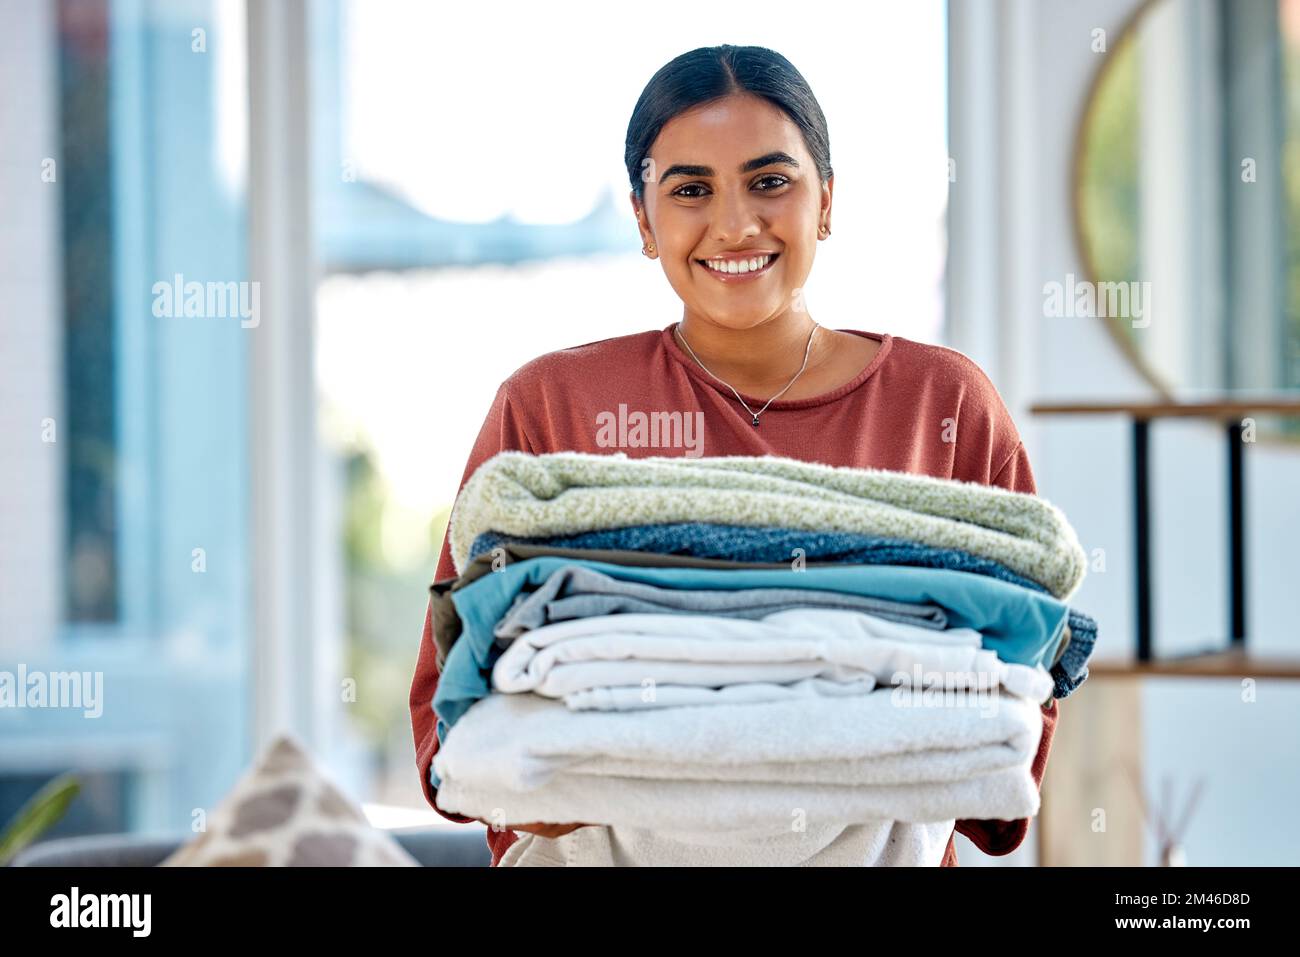 Portrait, nettoyage ou femme avec blanchisserie ou sourire heureux après avoir lavé des vêtements ou des serviettes dans les services de nettoyage. Hospitalité, hôtel ou face d'Indien Banque D'Images